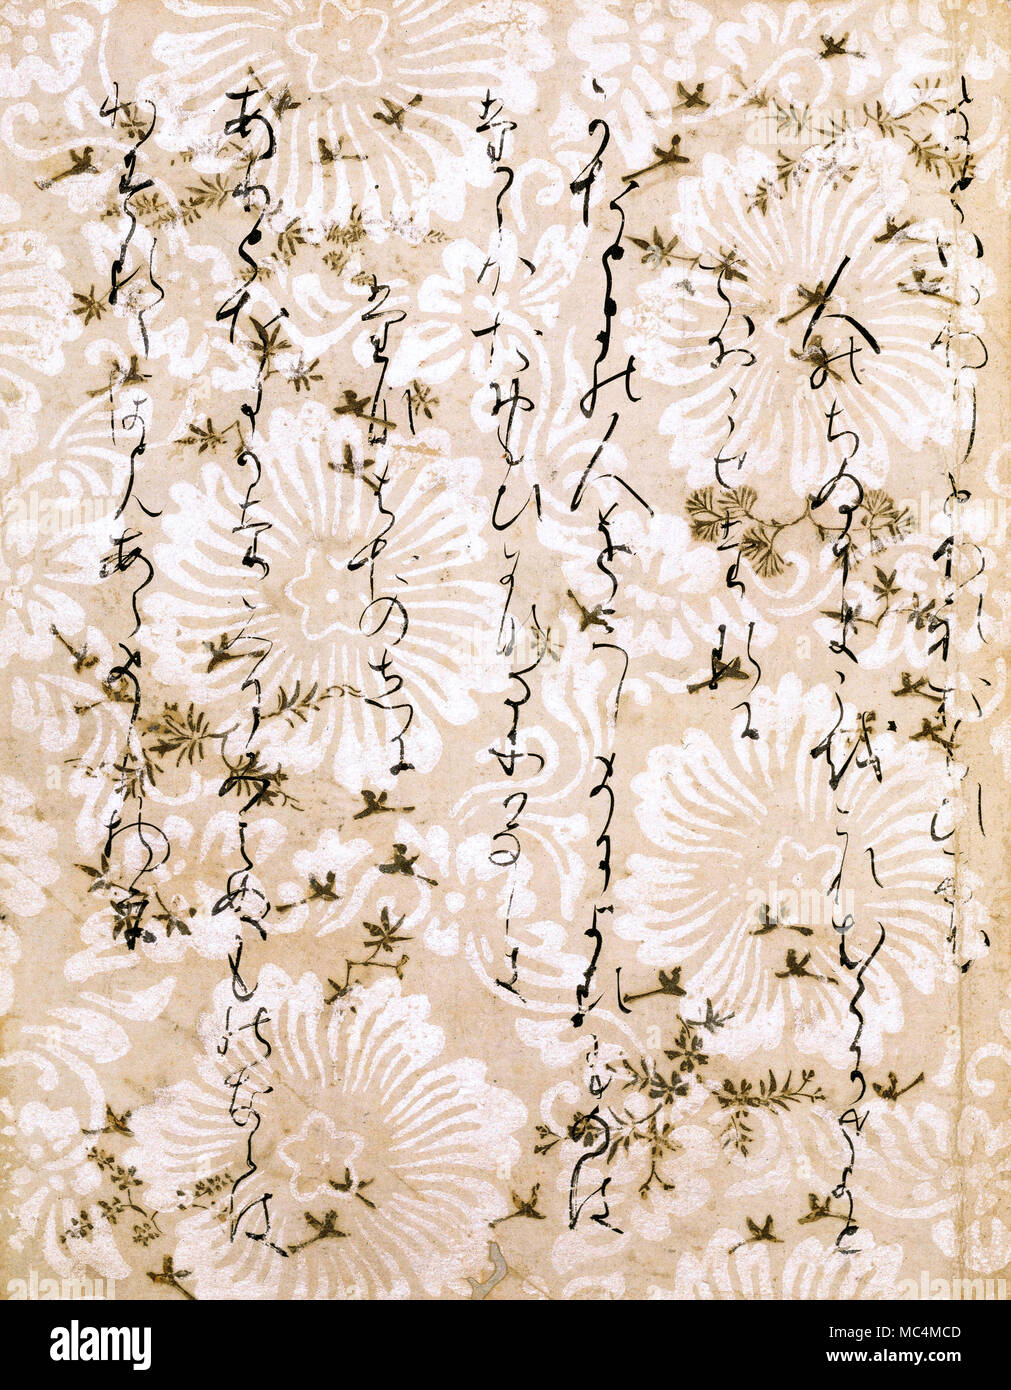 Anonyme, Japanisch, Seite aus der Anthologie mit Gedichten von 36 Dichtern. Heian-zeit 794-1185. Tinte und Silber über Holzschnitt auf Papier. Stockfoto